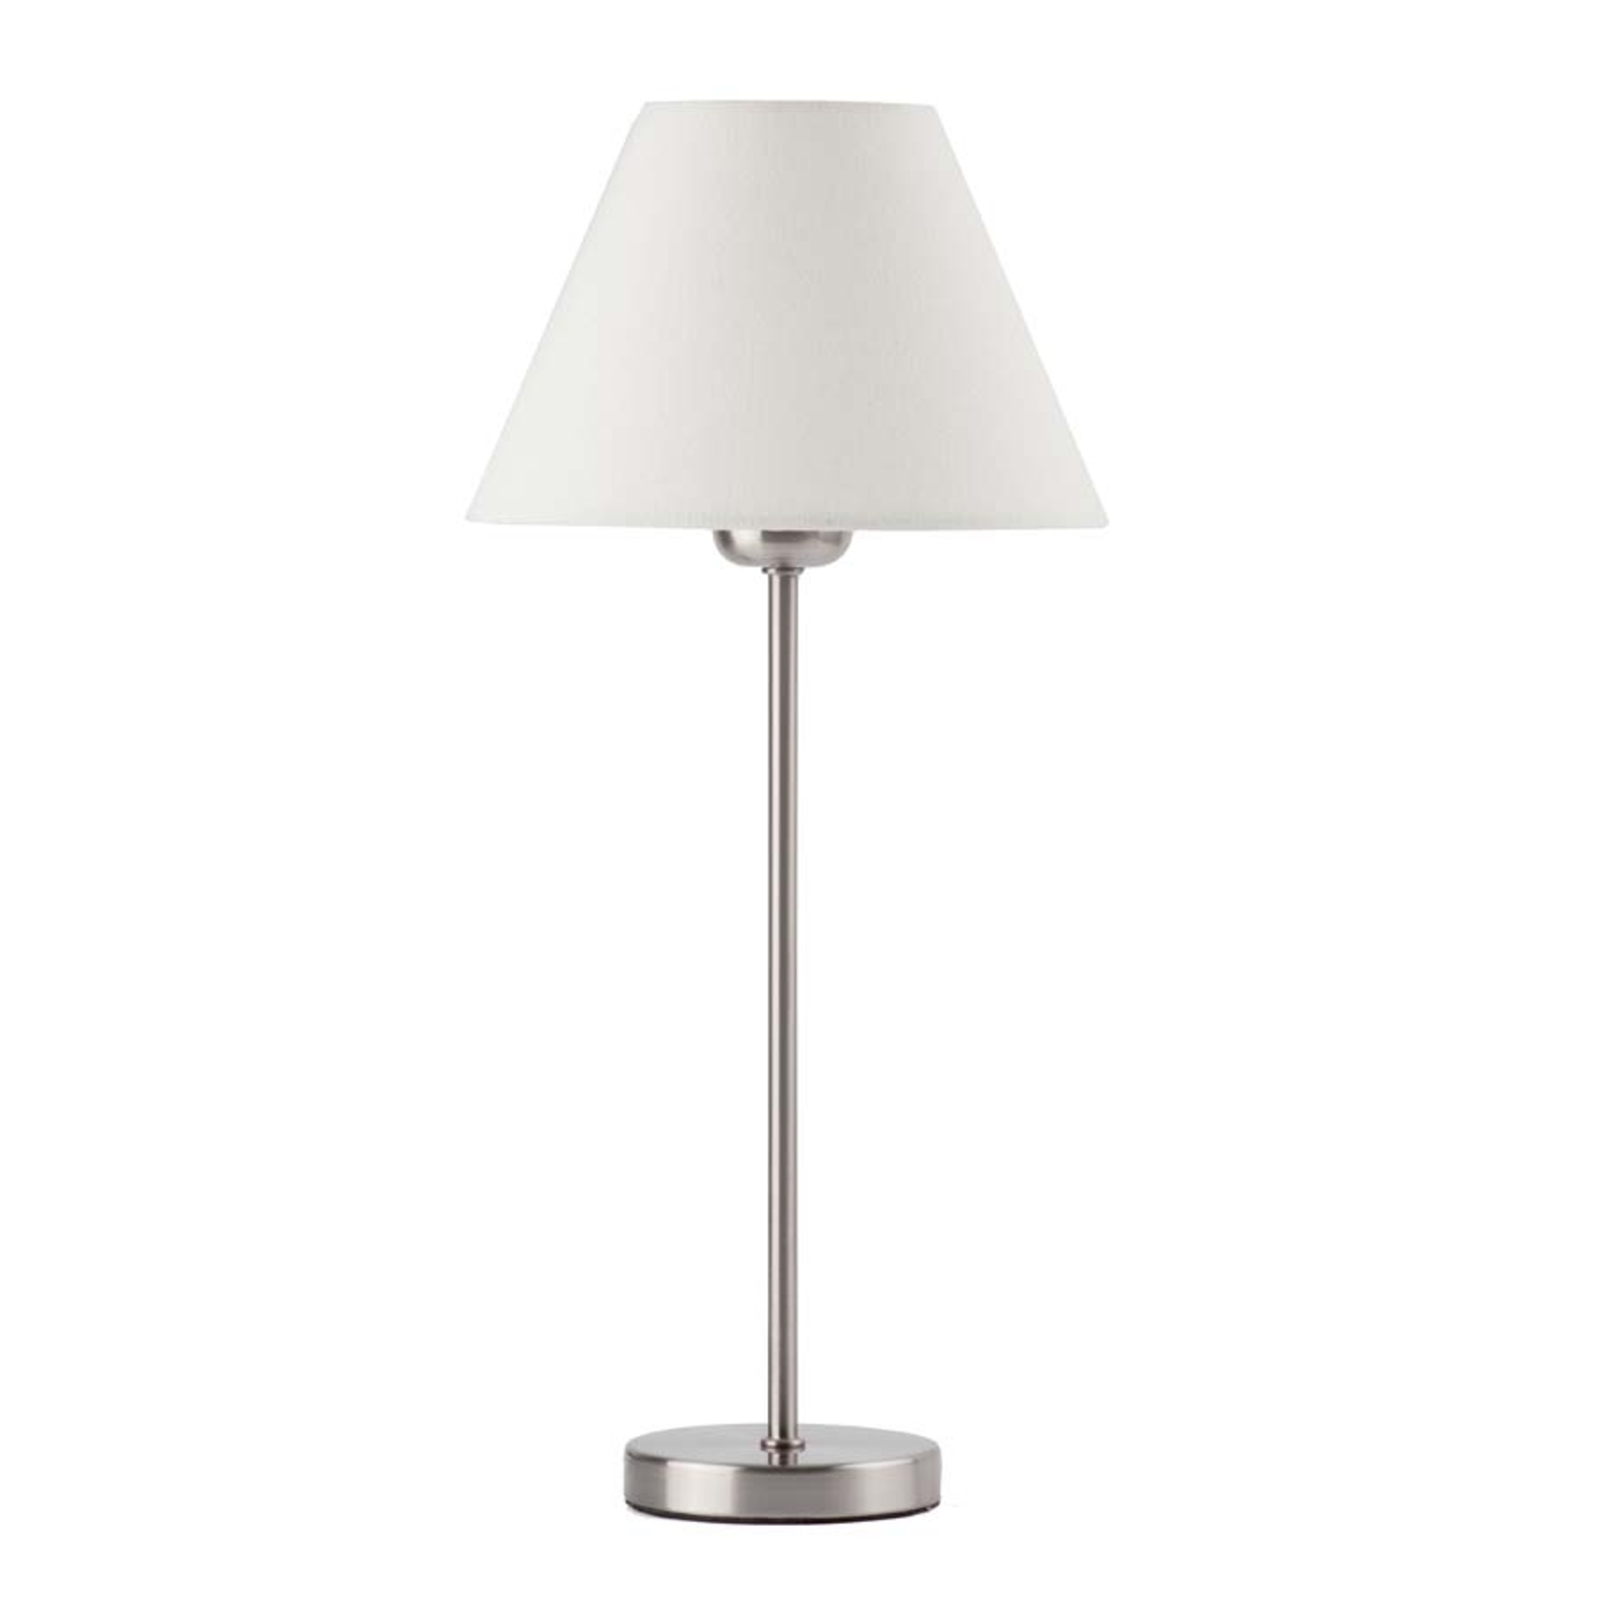 Nidia Elegant Table Lamp, Beige